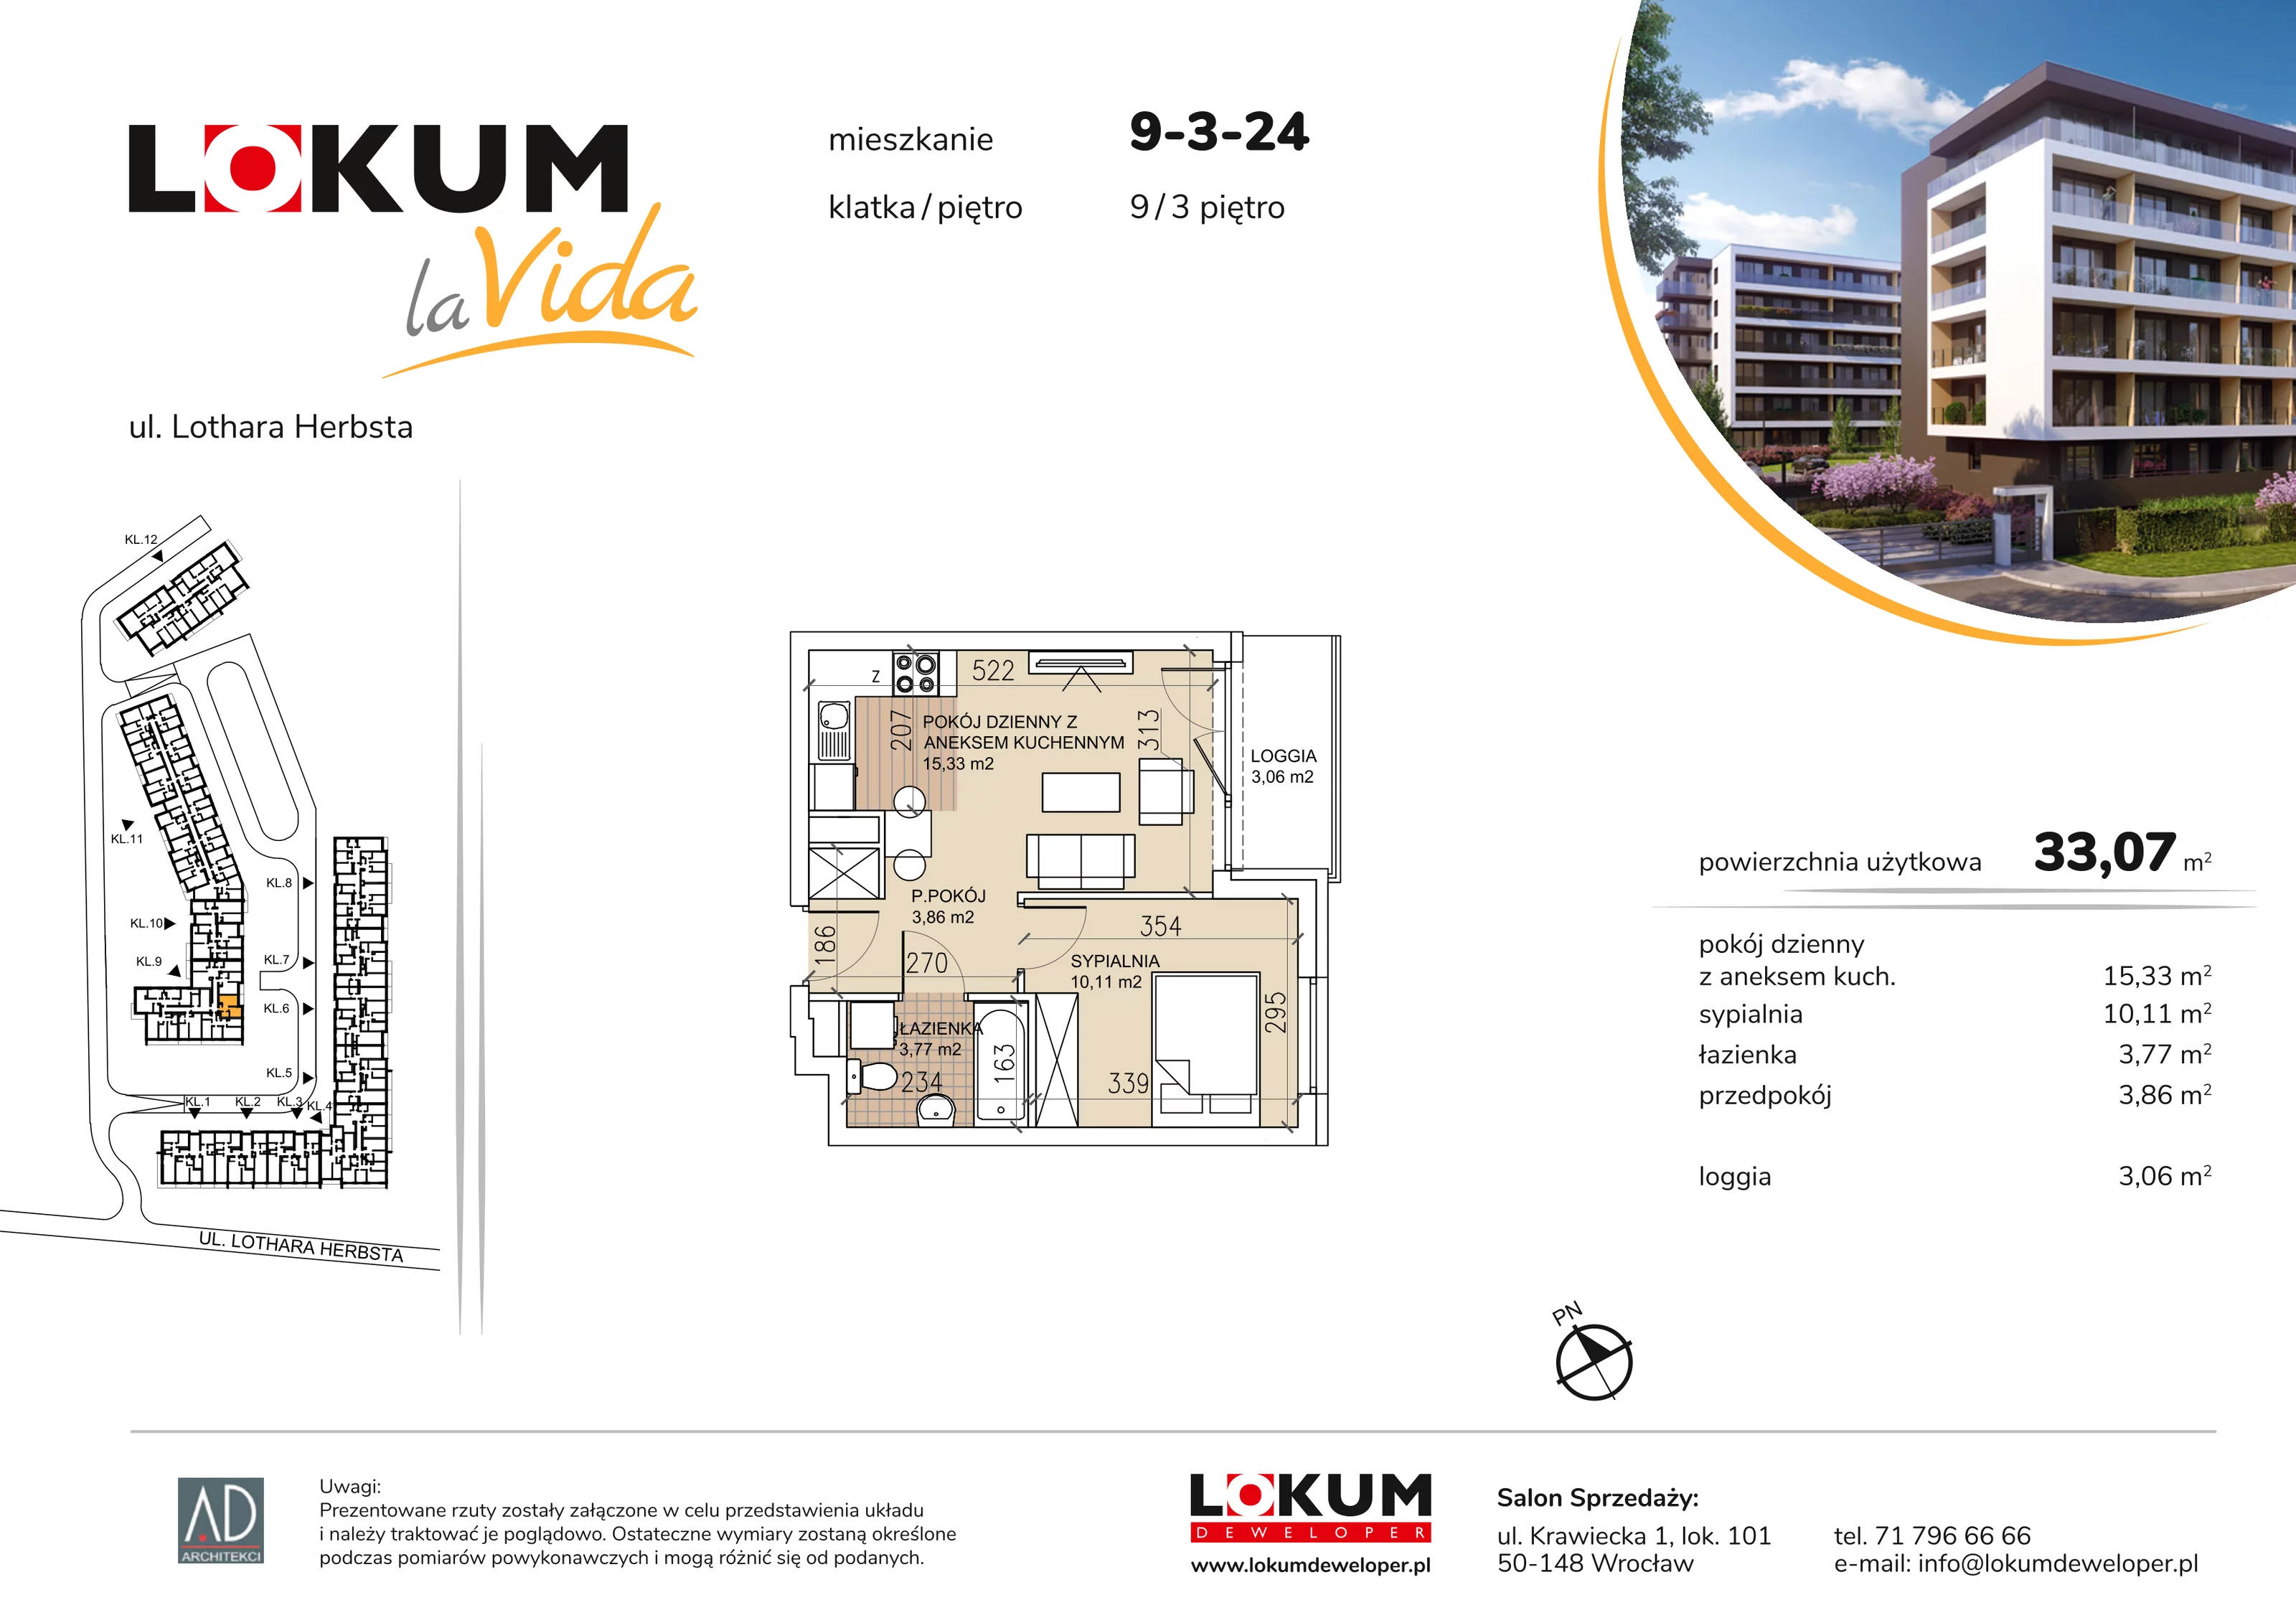 Mieszkanie 33,07 m², piętro 3, oferta nr 9-3-24, Lokum la Vida, Wrocław, Sołtysowice, ul. Lothara Herbsta